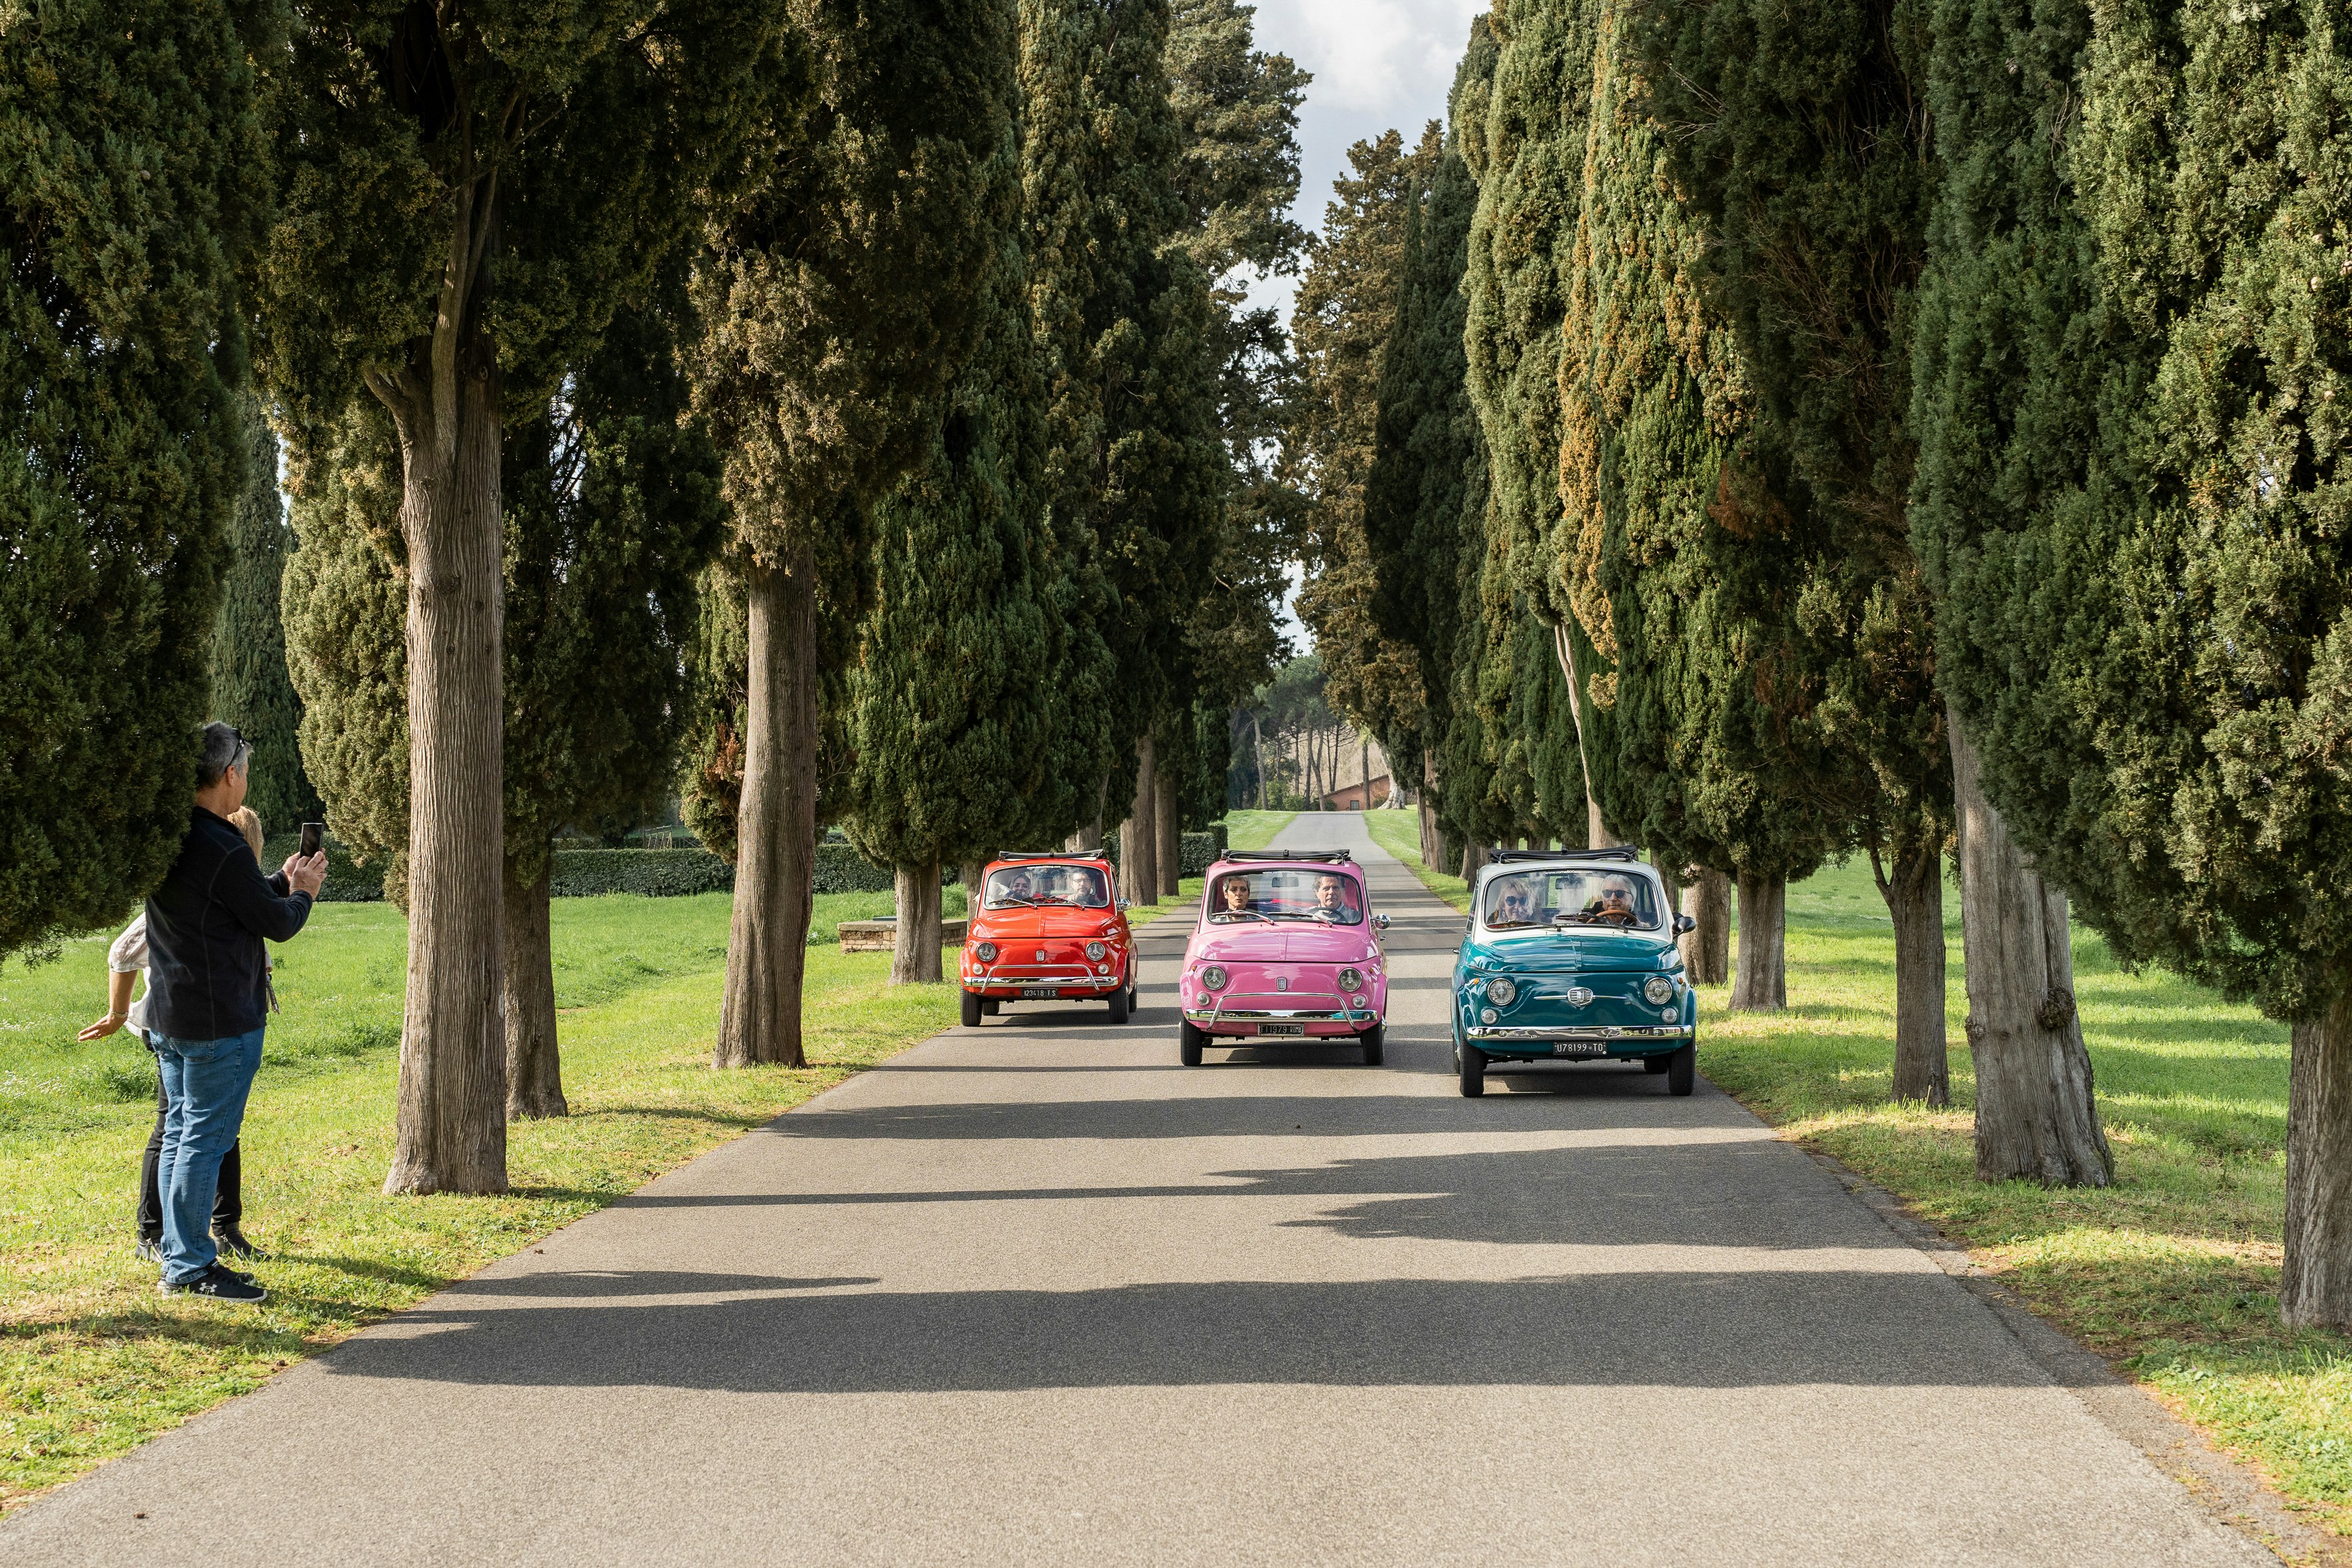 Fiat tour of rome